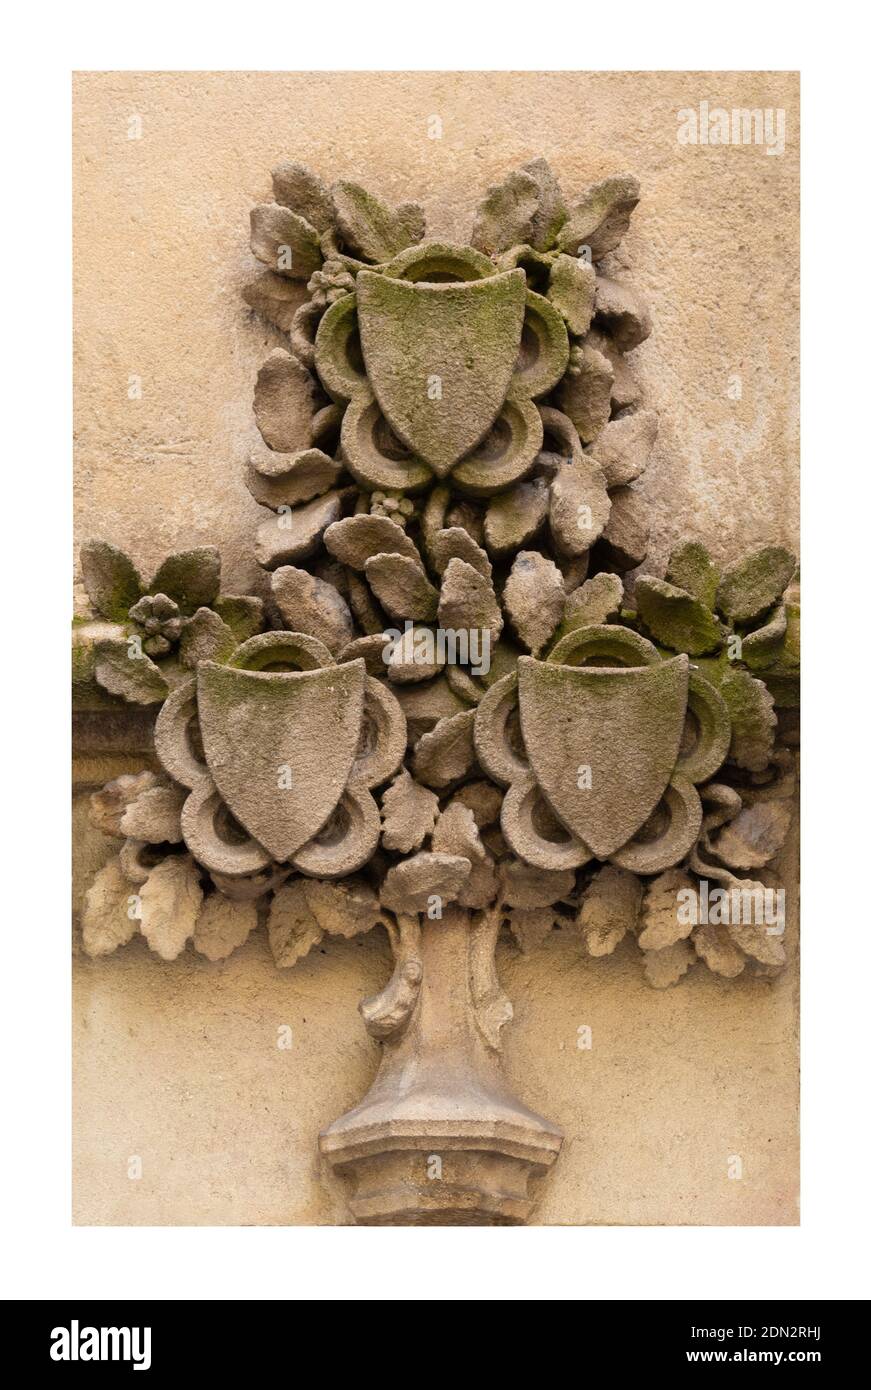 Éléments de décorations architecturales de bâtiments, stuc de gypse, ornements et motifs en plâtre, texture des murs. Dans les rues en Espagne, lieu public Banque D'Images